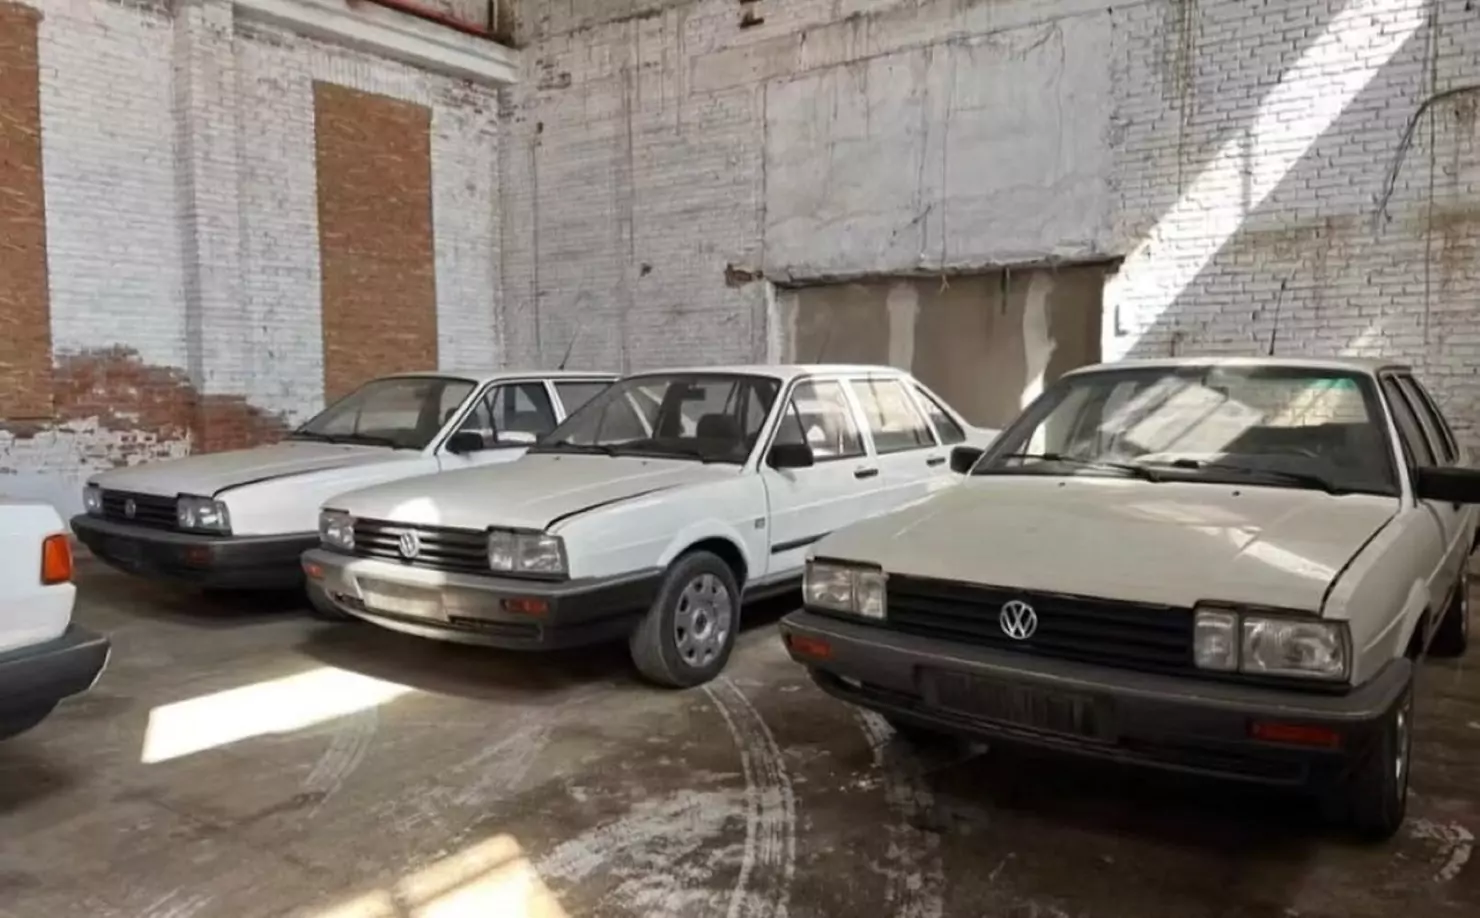 Coleção de Volkswagen Santana 0km / Foto: Han Chung Classics